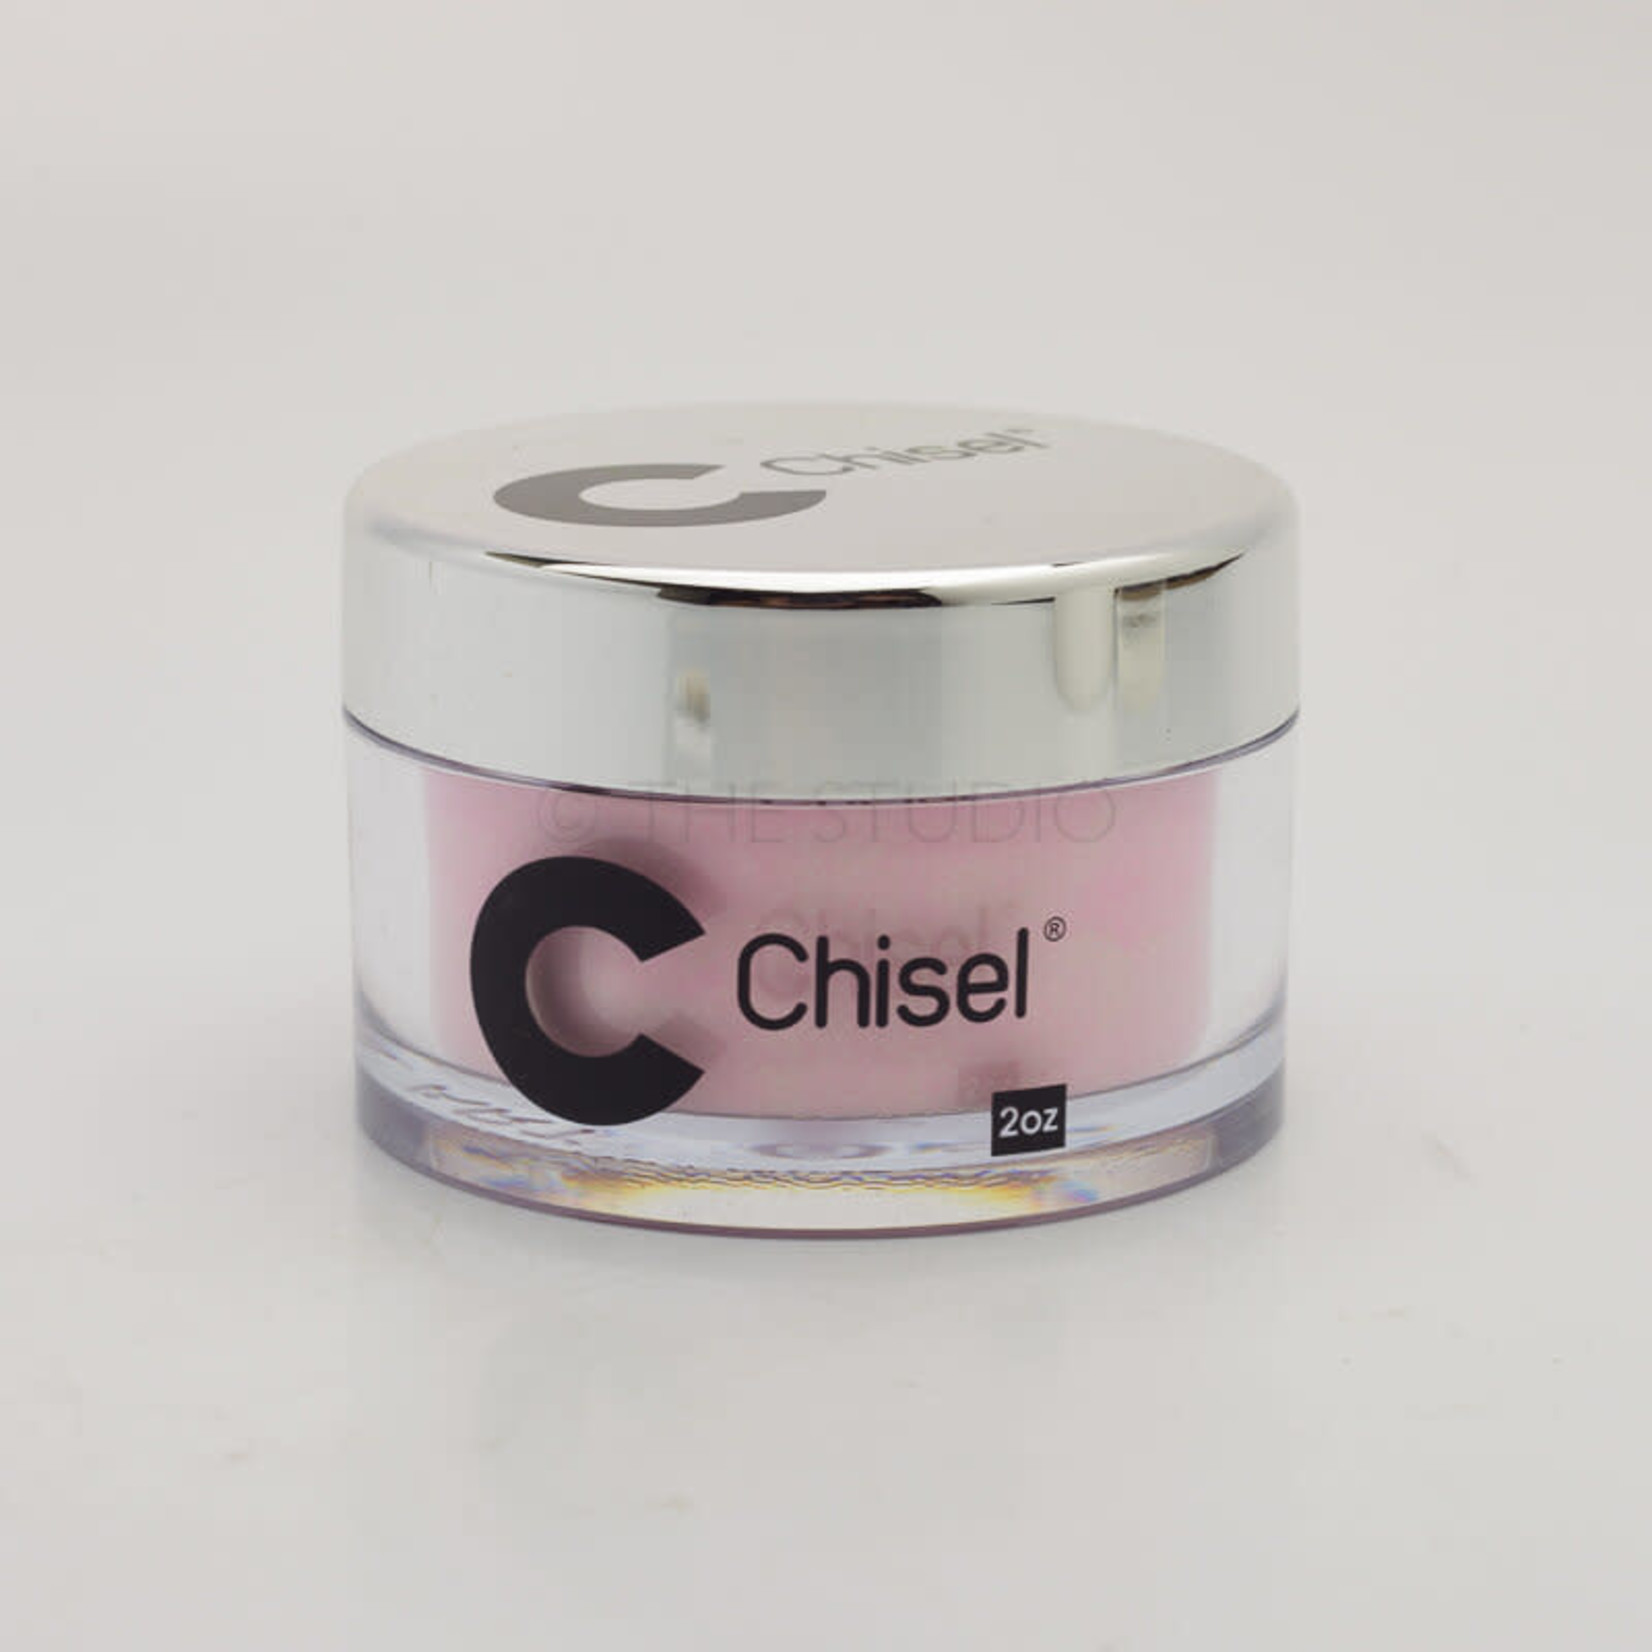 Chisel Chisel - Candy 03 - AIO Powder - 2 oz